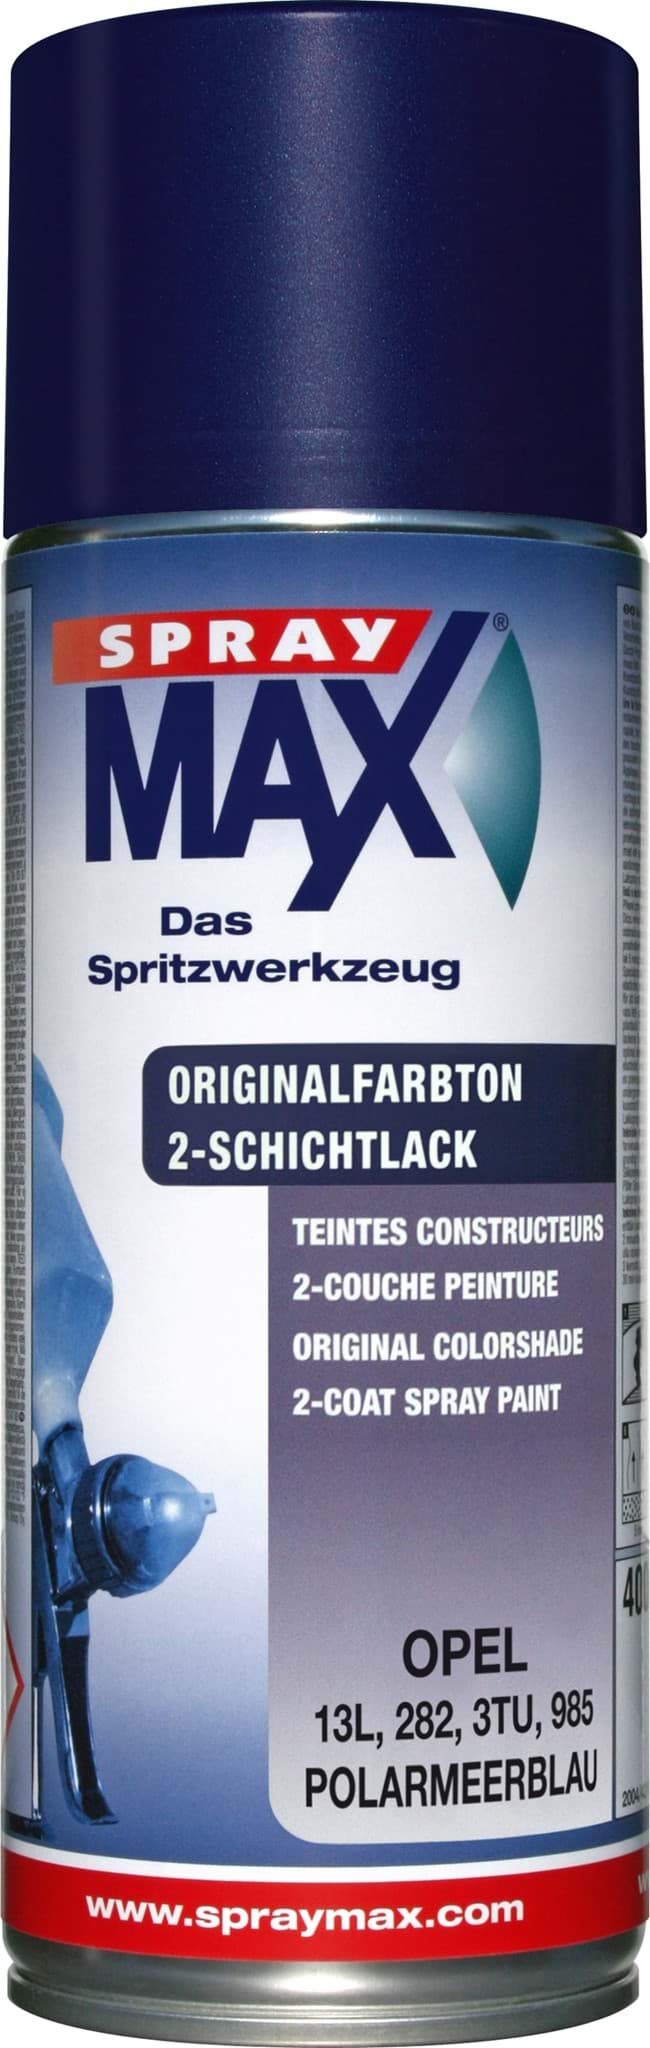 Obraz SprayMax Originalfarbton für Opel 282 polarmeerblau